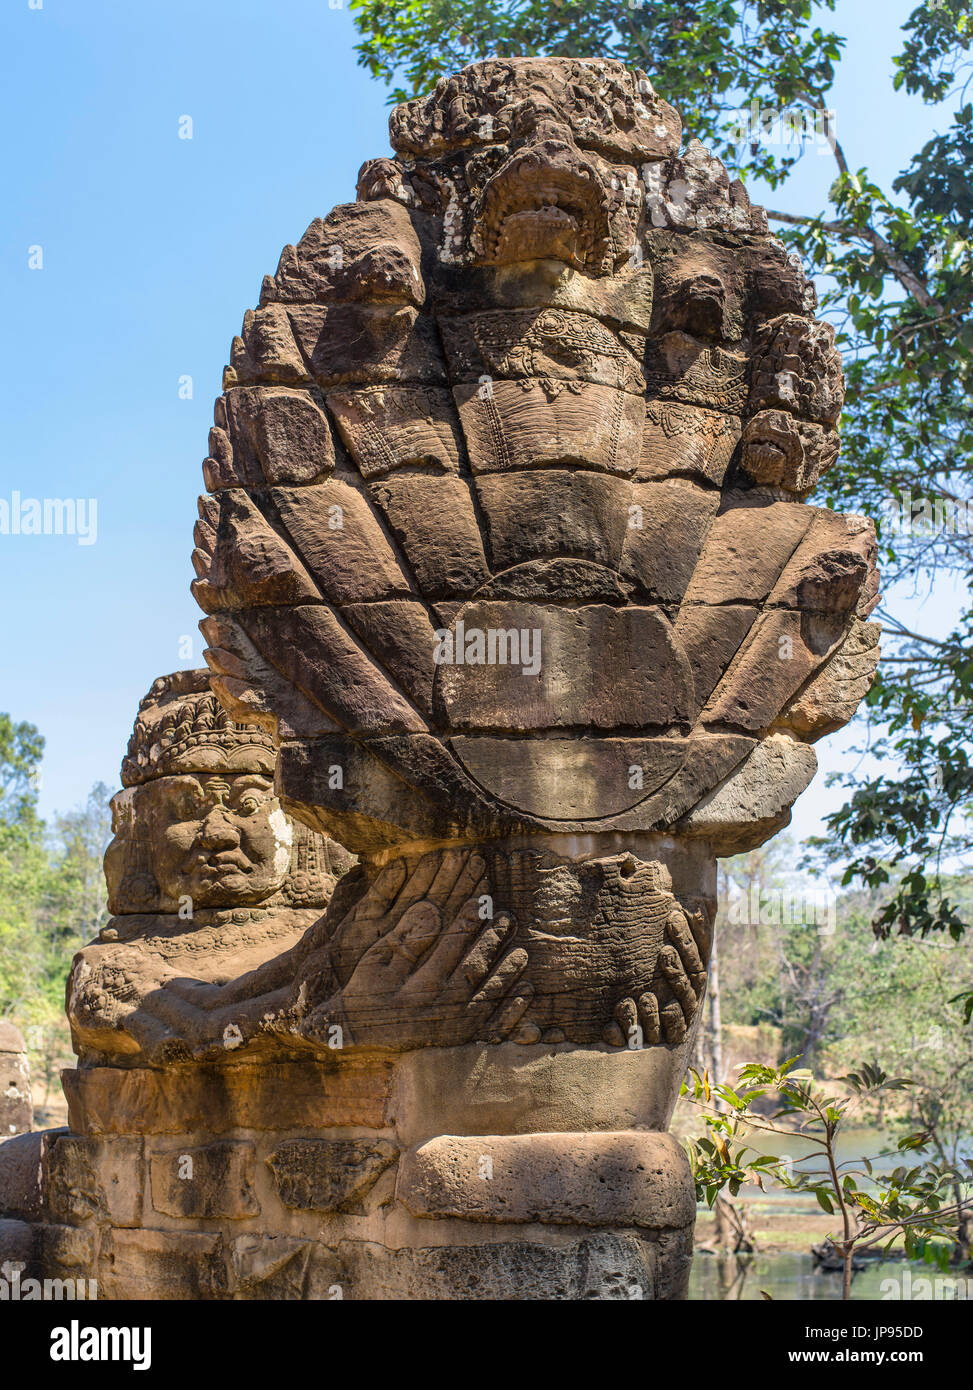 Naga at the South Gate of Angkor Thom, Angkor Archaeological Park, Stock Photo